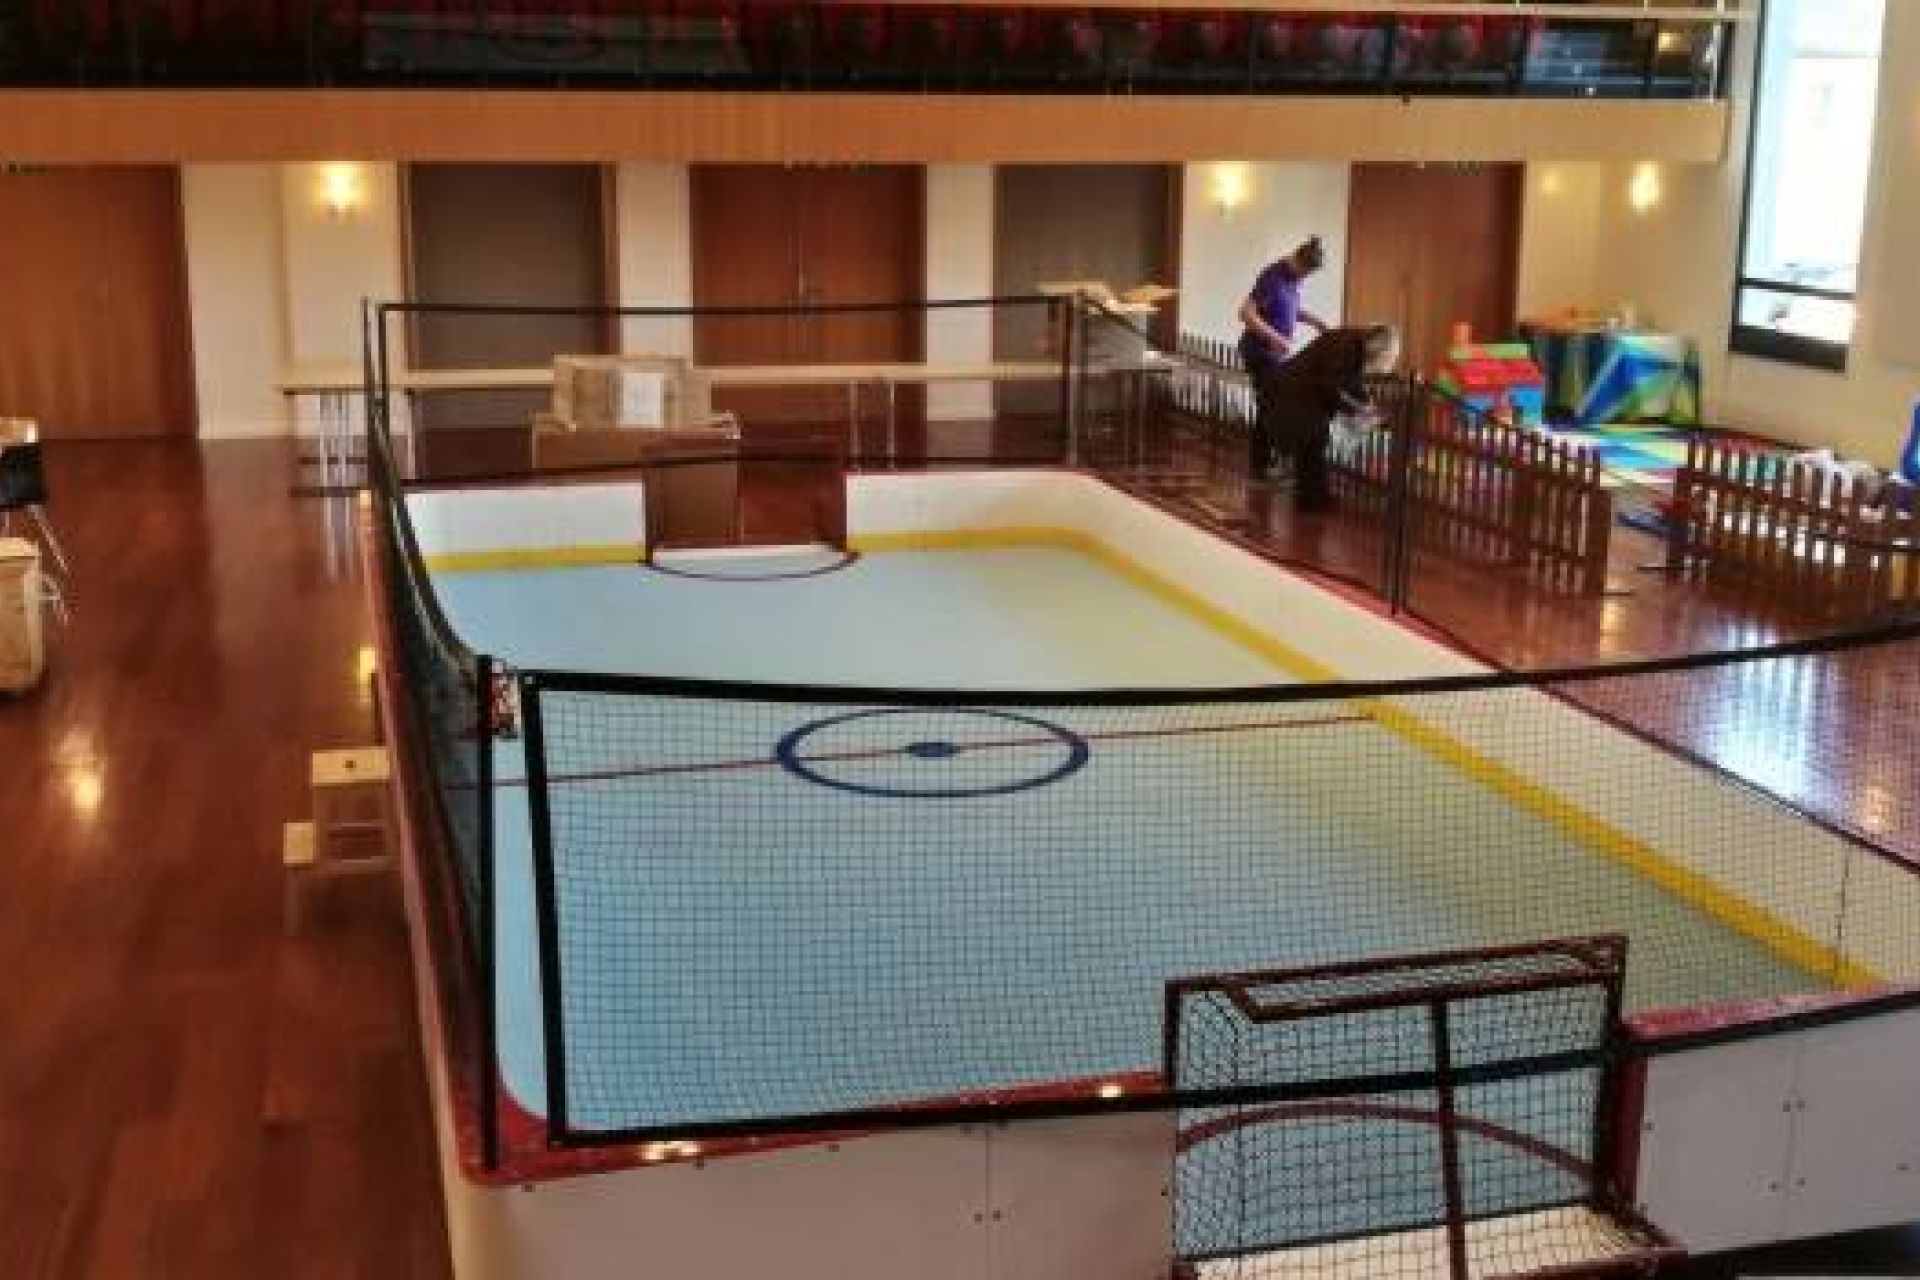 La Bottinoire, petite patinoire mobile synthétique, est idéale pour initier les enfants au unihockey.